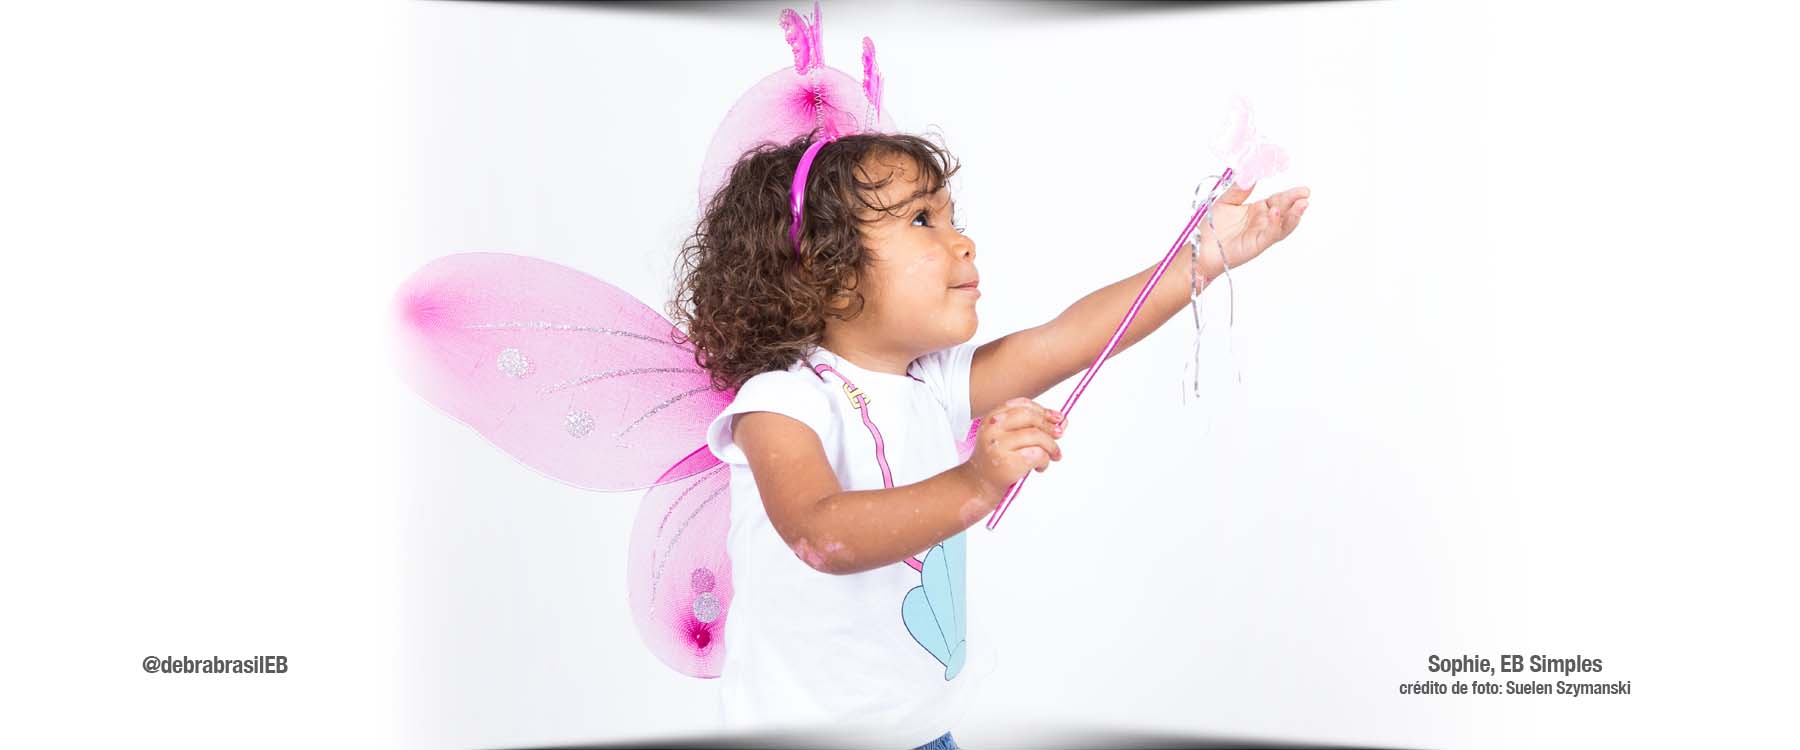 Sophie, menina com epidermólise bolhosa (EB) simples, vestida de fada com asas de borboleta, tiara e varinha de condão